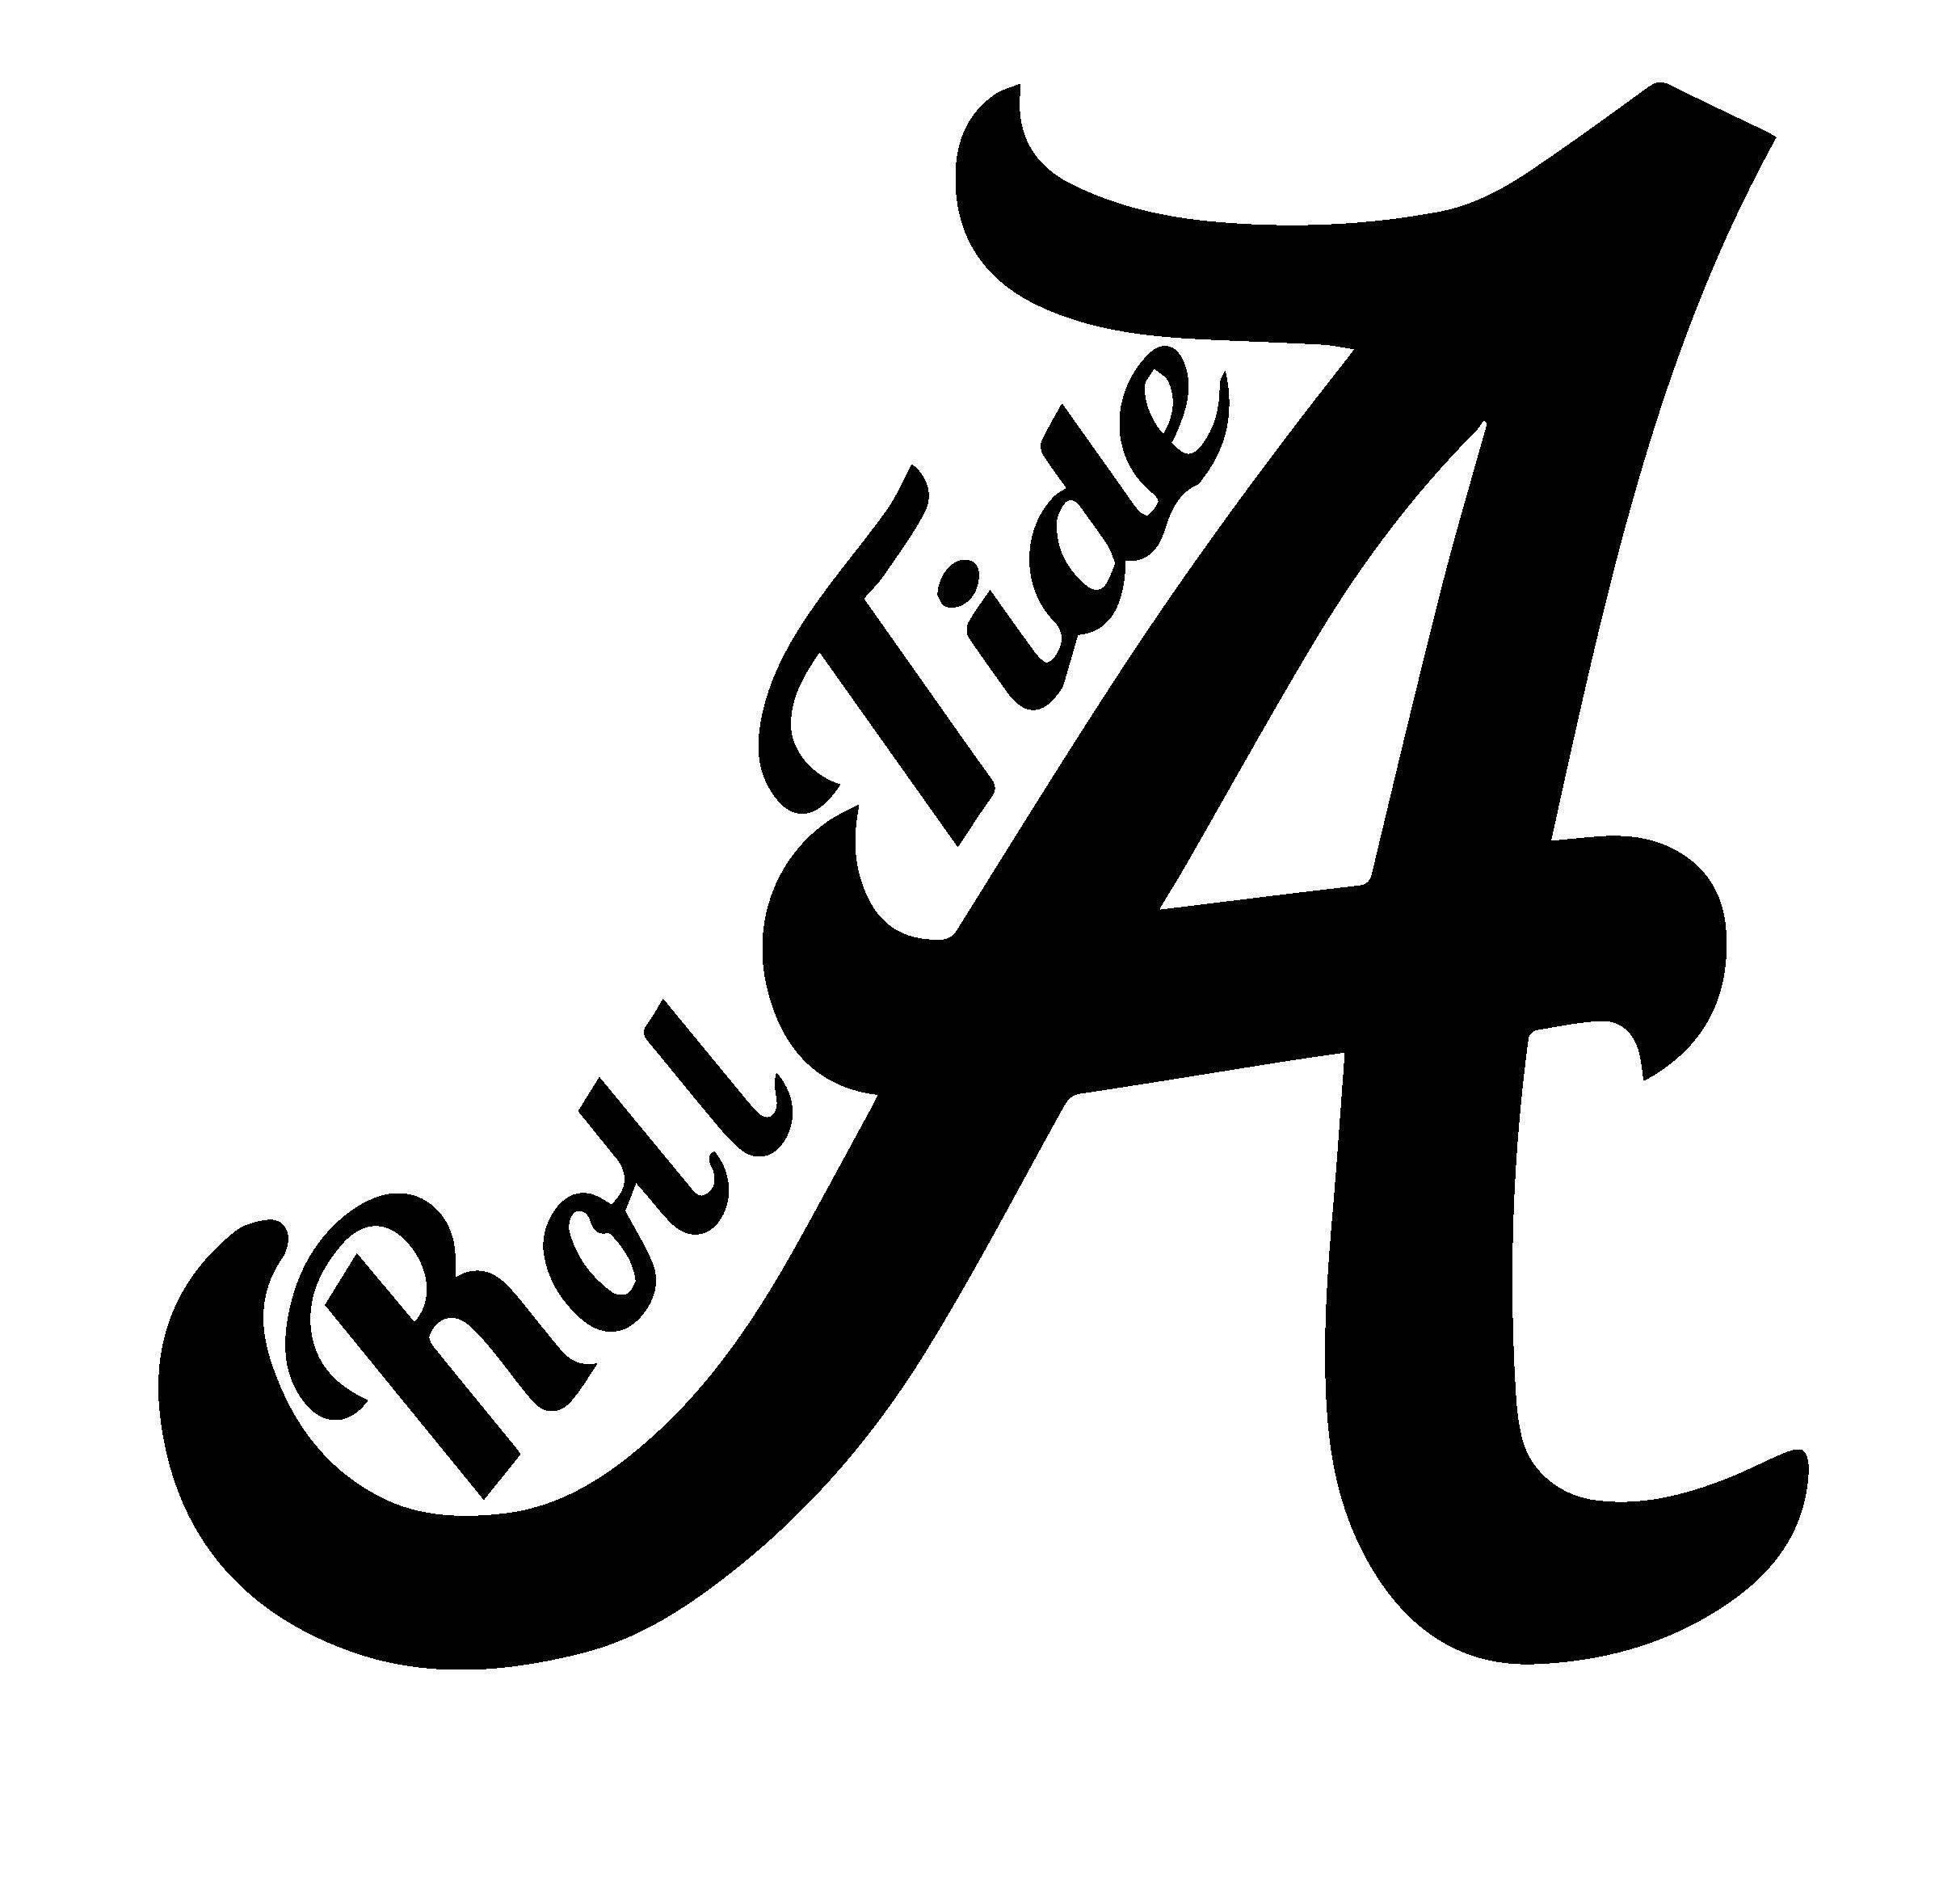 Alabama Crimson Tide Logo - Alabama Crimson Tide Roll Tide. Cricut ideas. Roll tide, Alabama